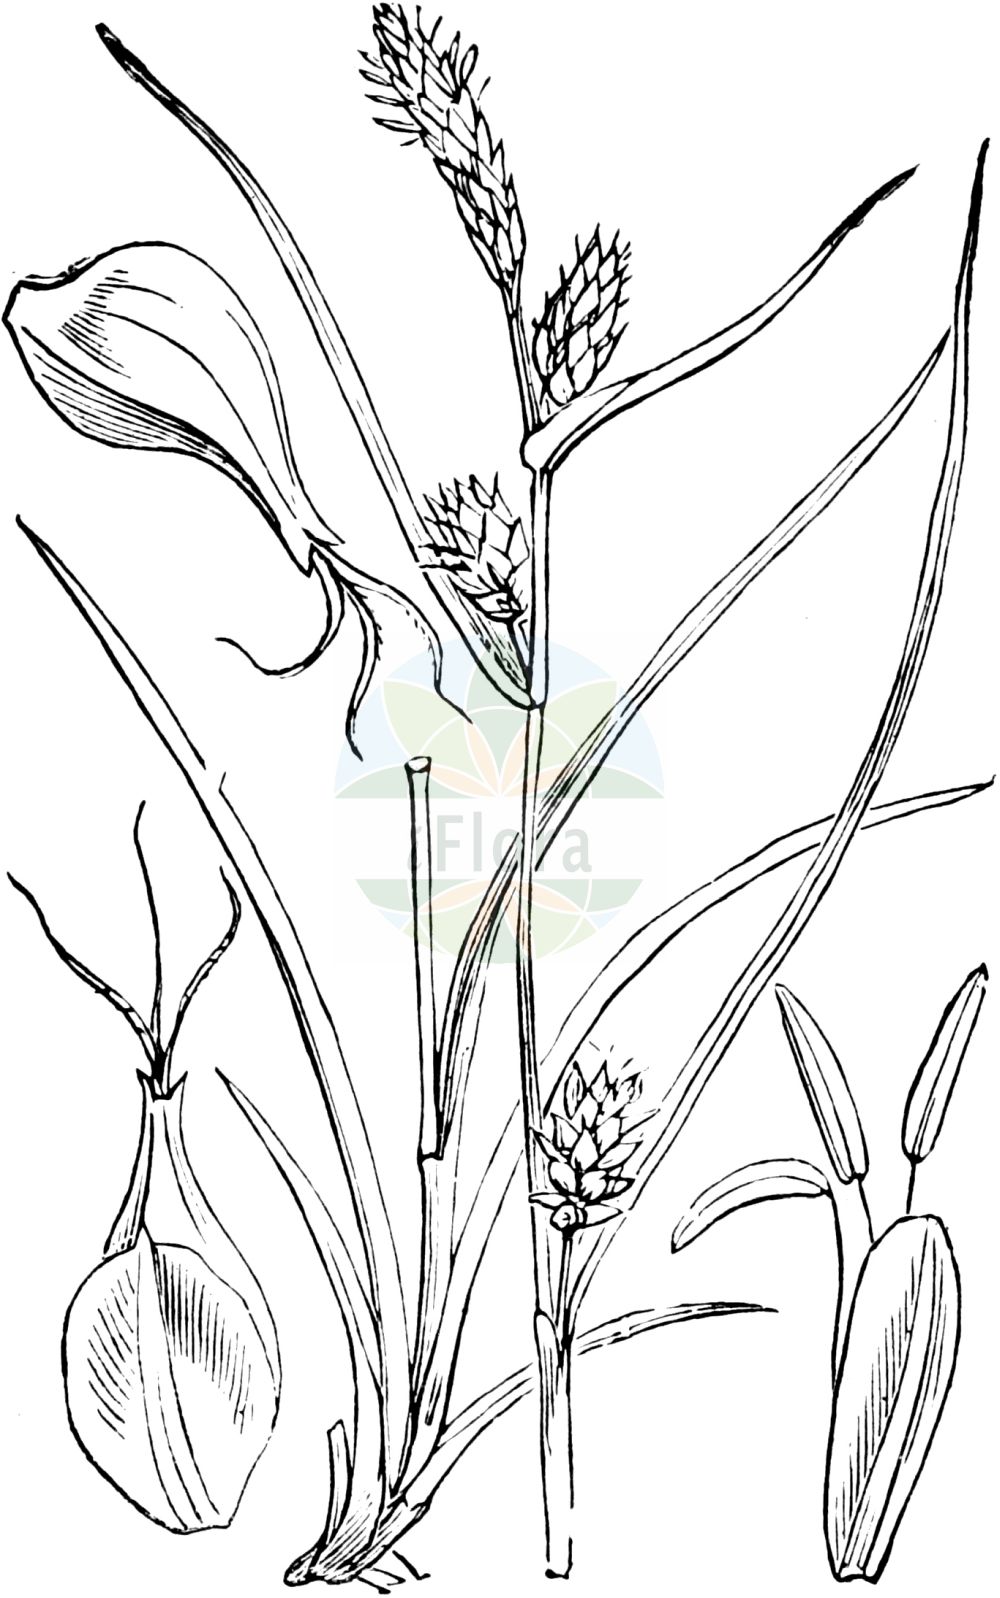 Historische Abbildung von Carex flava (Gelb-Segge - Large Yellow-Sedge). Das Bild zeigt Blatt, Bluete, Frucht und Same. ---- Historical Drawing of Carex flava (Gelb-Segge - Large Yellow-Sedge). The image is showing leaf, flower, fruit and seed.(Carex flava,Gelb-Segge,Large Yellow-Sedge,Carex flava,Carex flavella,Carex nevadensis subsp. flavella,Gelb-Segge,Alpen-Gelb-Segge,Gewoehnliche Gelbsegge,Large Yellow-Sedge,Common Yellow Sedge,Yellow Sedge,Carex,Segge,Sedge,Cyperaceae,Sauergräser,Sedge family,Blatt,Bluete,Frucht,Same,leaf,flower,fruit,seed,Fitch et al. (1880))